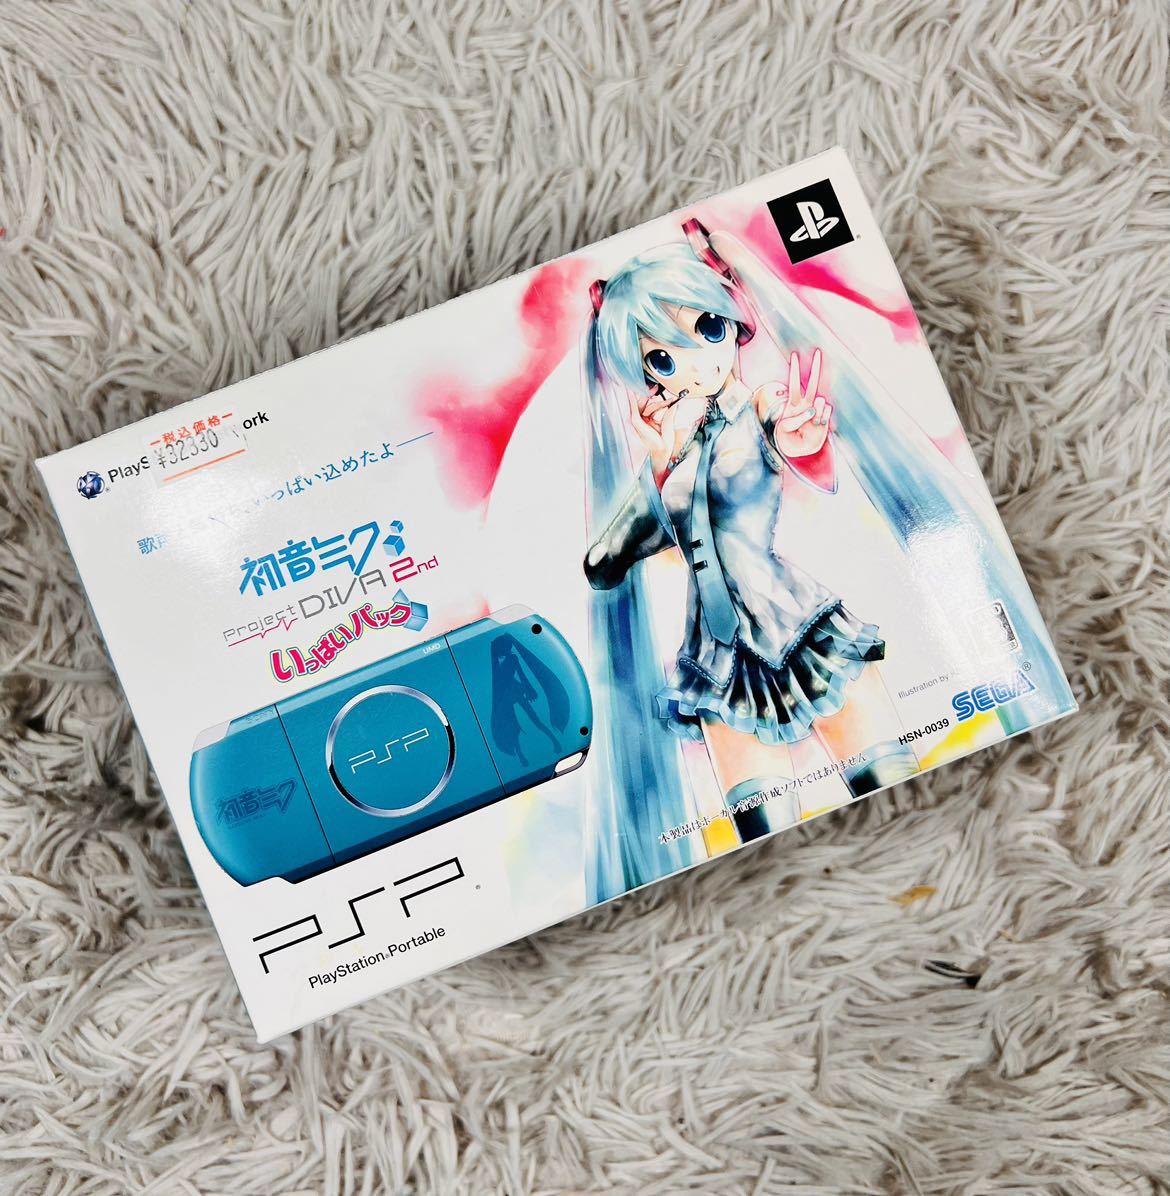 PSP-3000 初音ミク-Project DIVA- item details | Yahoo! JAPAN